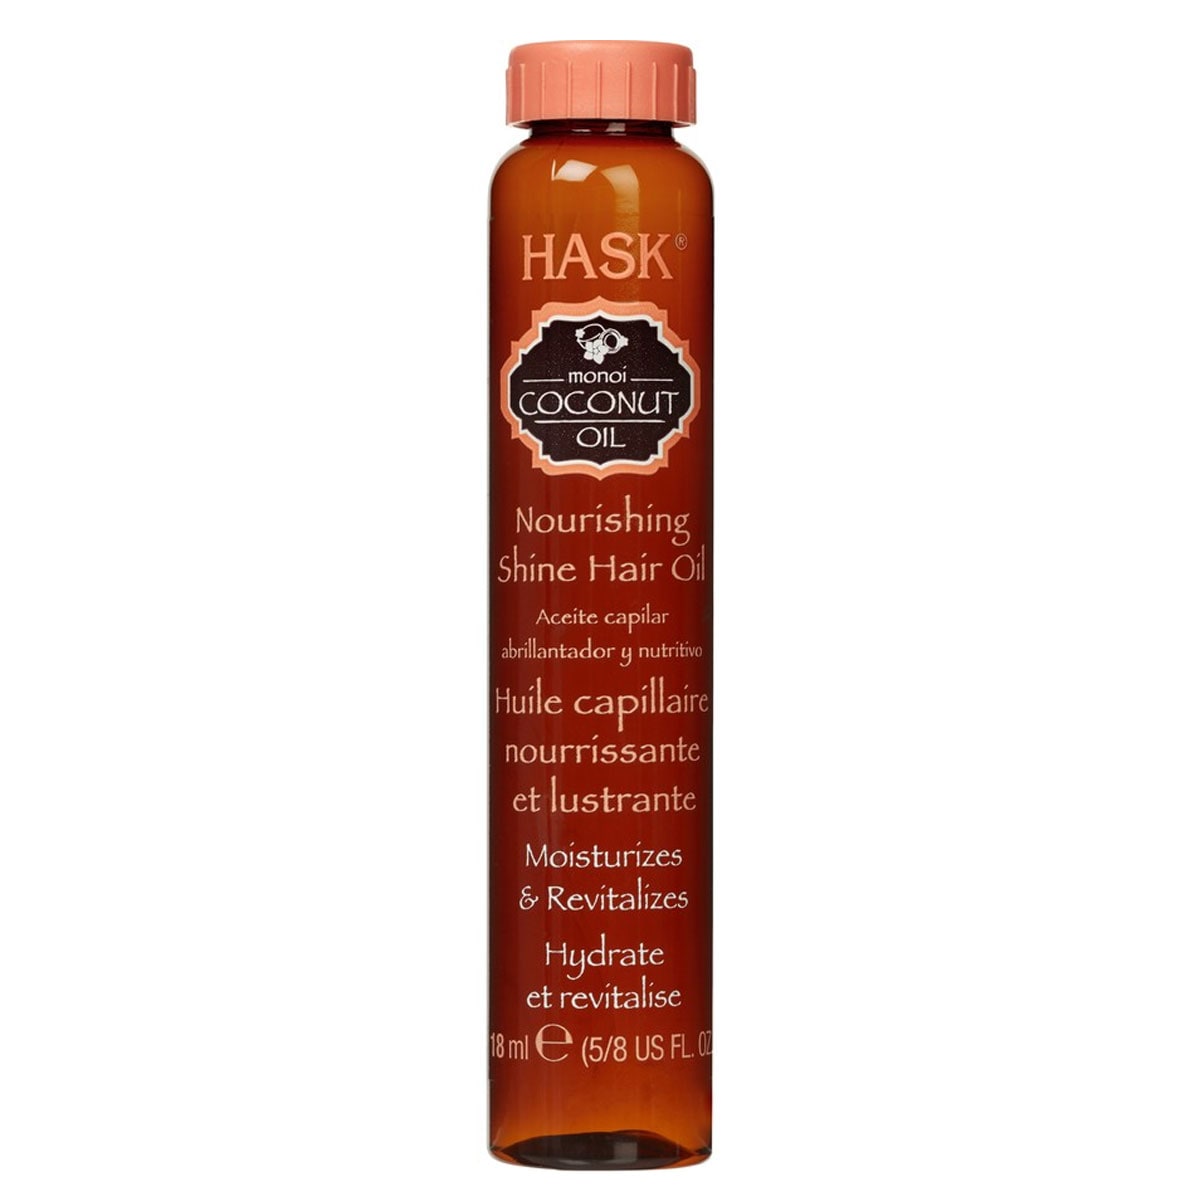 Hask Monoi Coconut Oil Nourishing Hair Oil 18ml